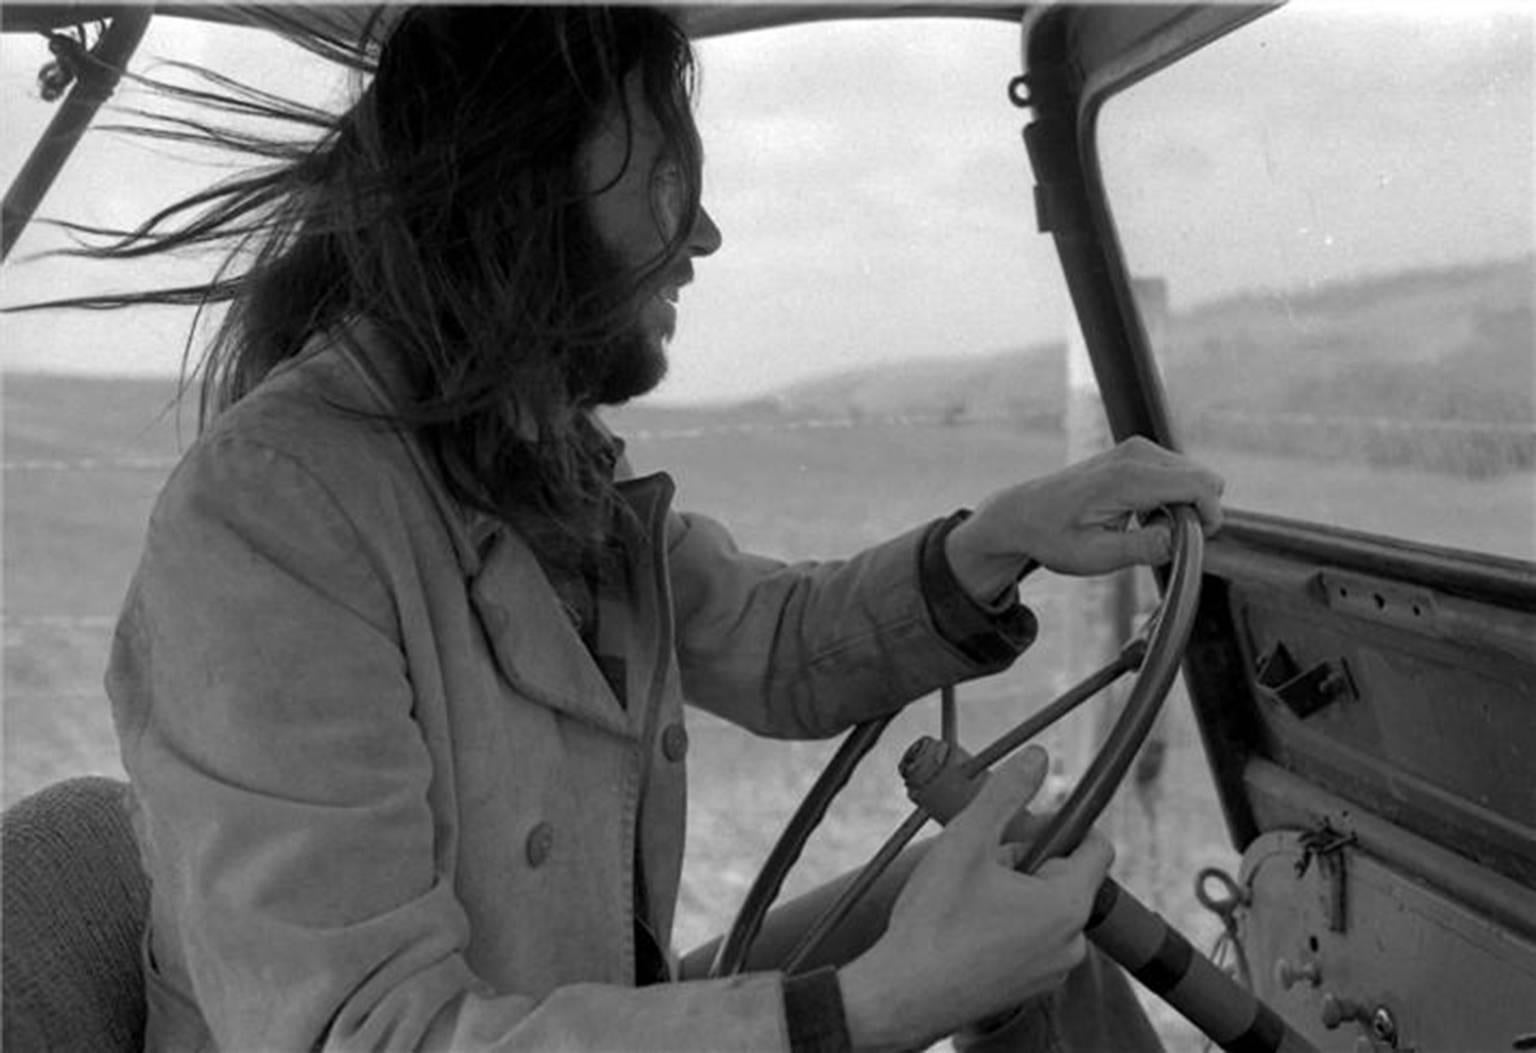 Henry Diltz Portrait Photograph - Neil Young "Jeep"